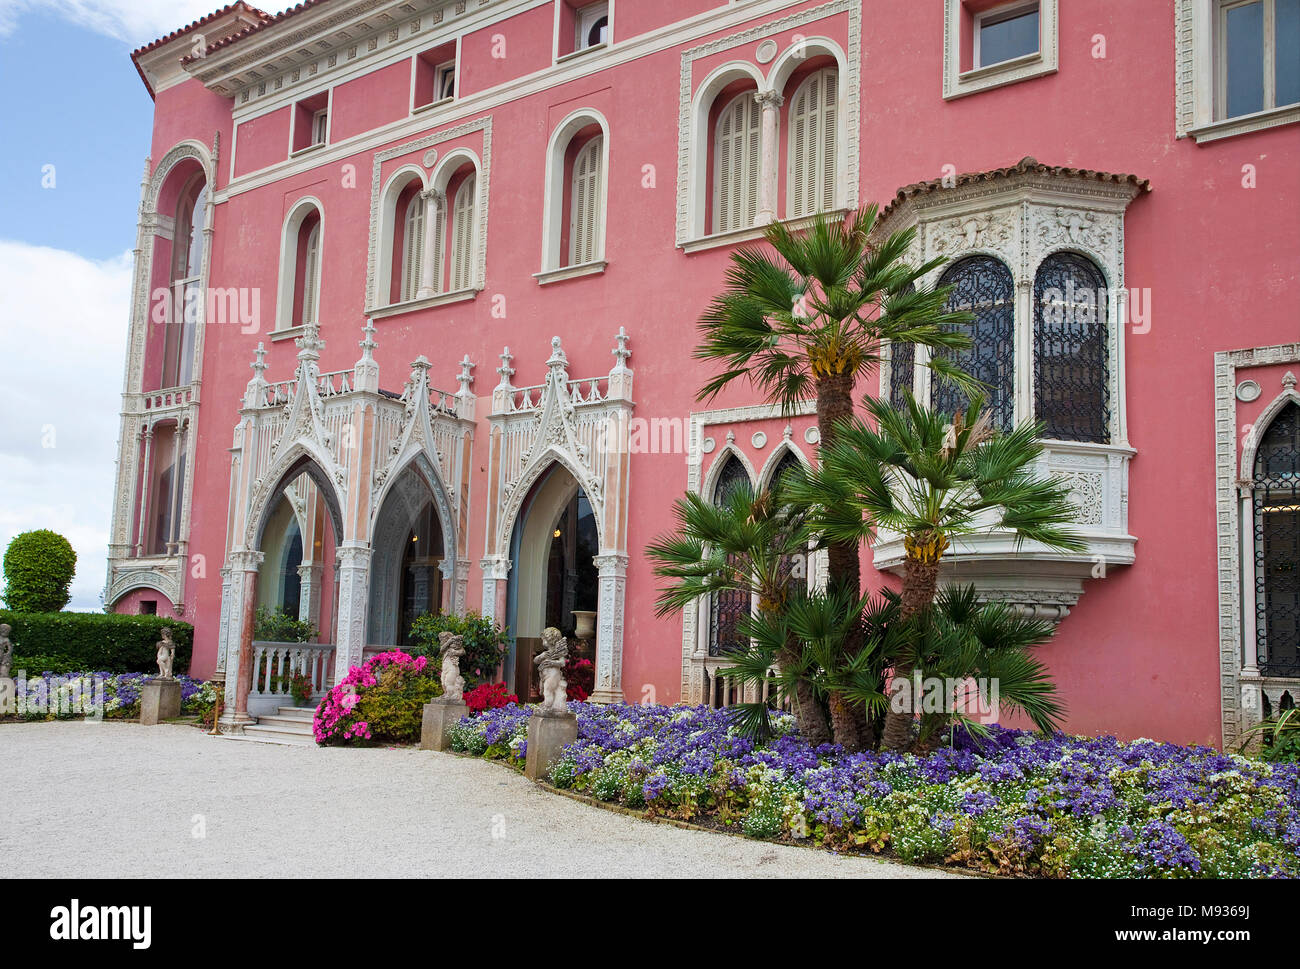 Villa Ephrussi de Rothschild, l'architecture toscane au Cap Ferrat, au sud de la France, Var, Cote d'Azur, France, Europe Banque D'Images